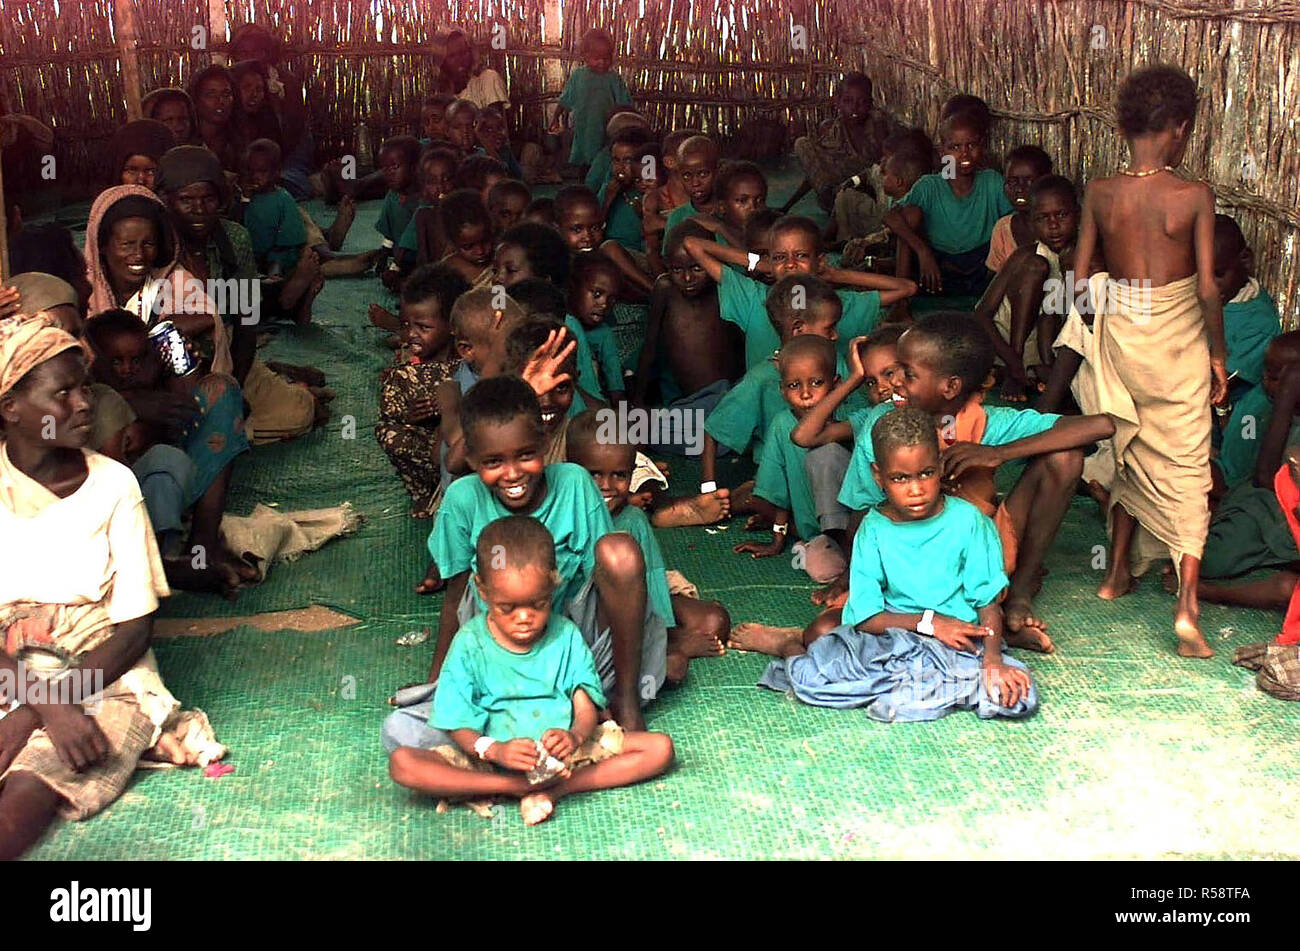 1992 - Gerade auf Schuß in einer Bambushütte an mehreren Somalische Kinder sitzen in Reihen auf der grünen Matte. Fast alle Kinder tragen grüne t-shirts. Einige ältere somalischen Frauen gesehen sitzen in einer Reihe auf der linken Seite des Rahmens. Stockfoto